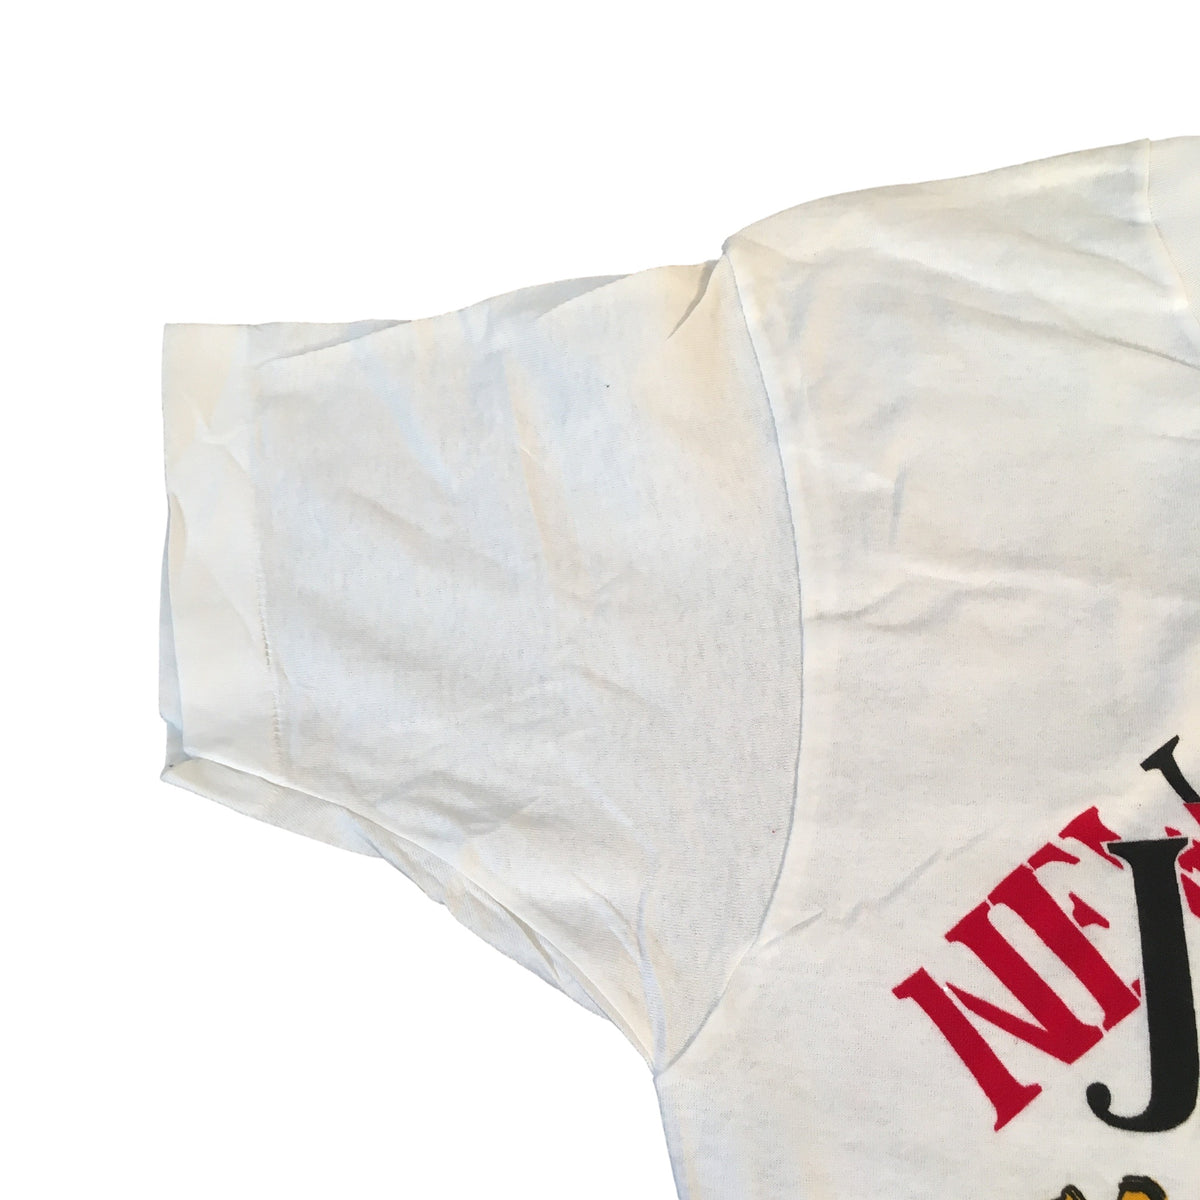 Vintage New Jack City &quot;It&#39;s Personal&quot; T-Shirt - jointcustodydc